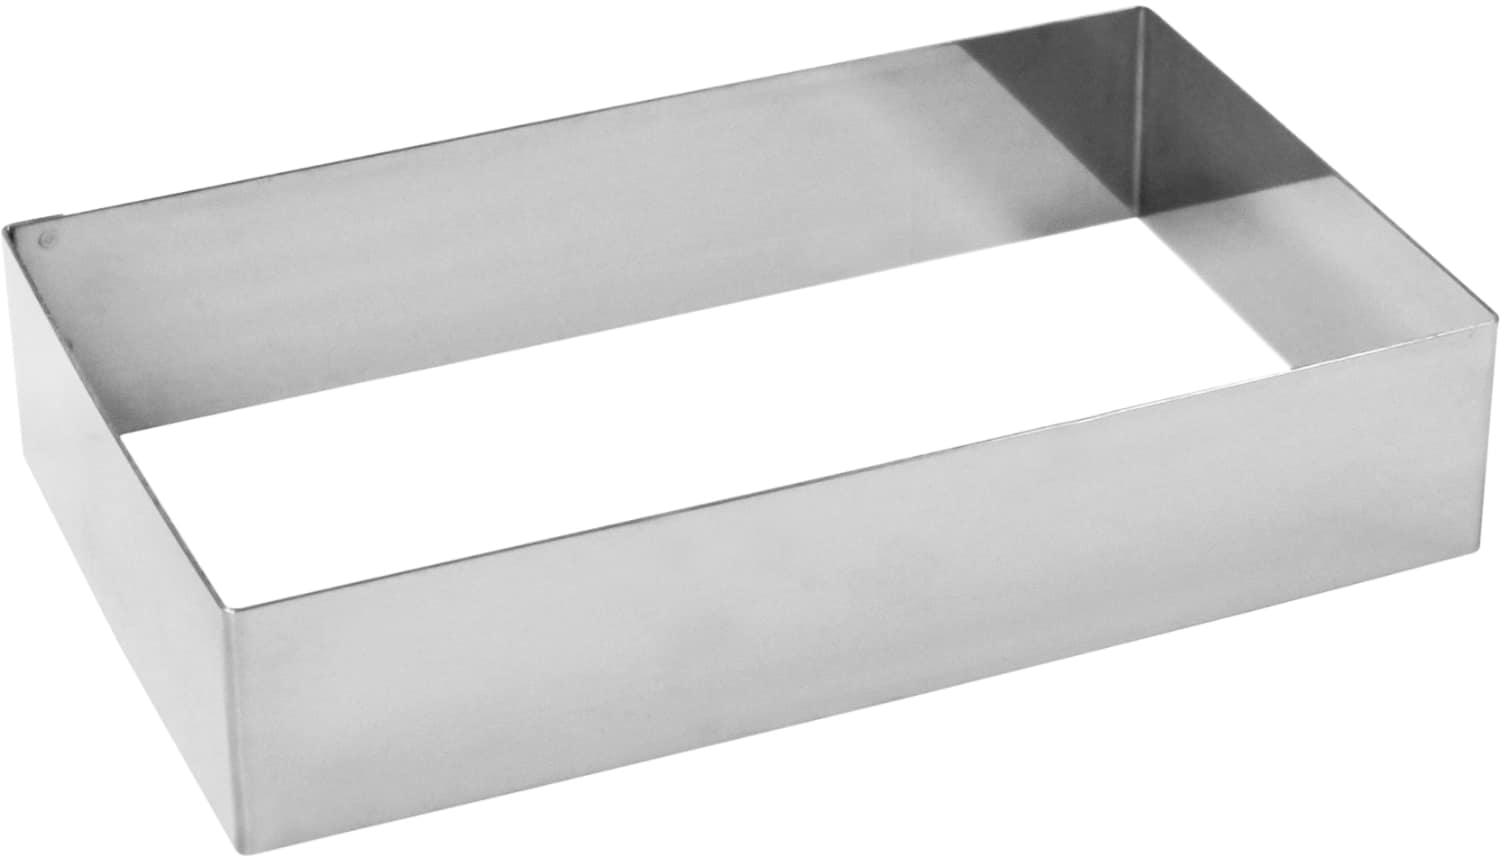 Tart ring "rectanglar" stainless steel